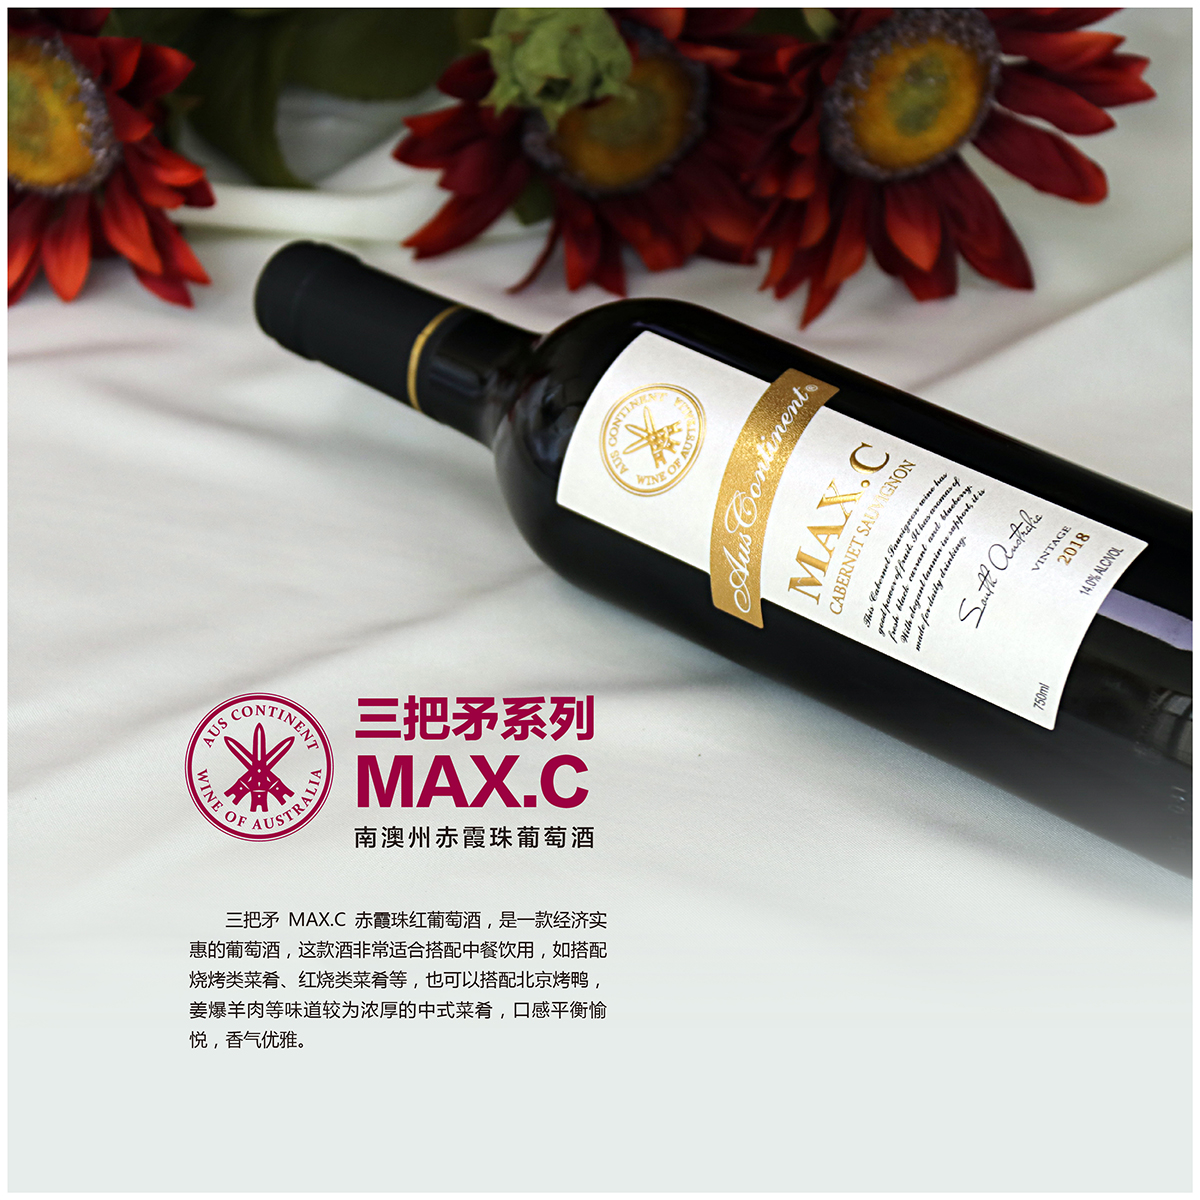 澳大利亚南澳产区澳洲大陆酒庄三把矛系列赤霞珠MAXC干红葡萄酒